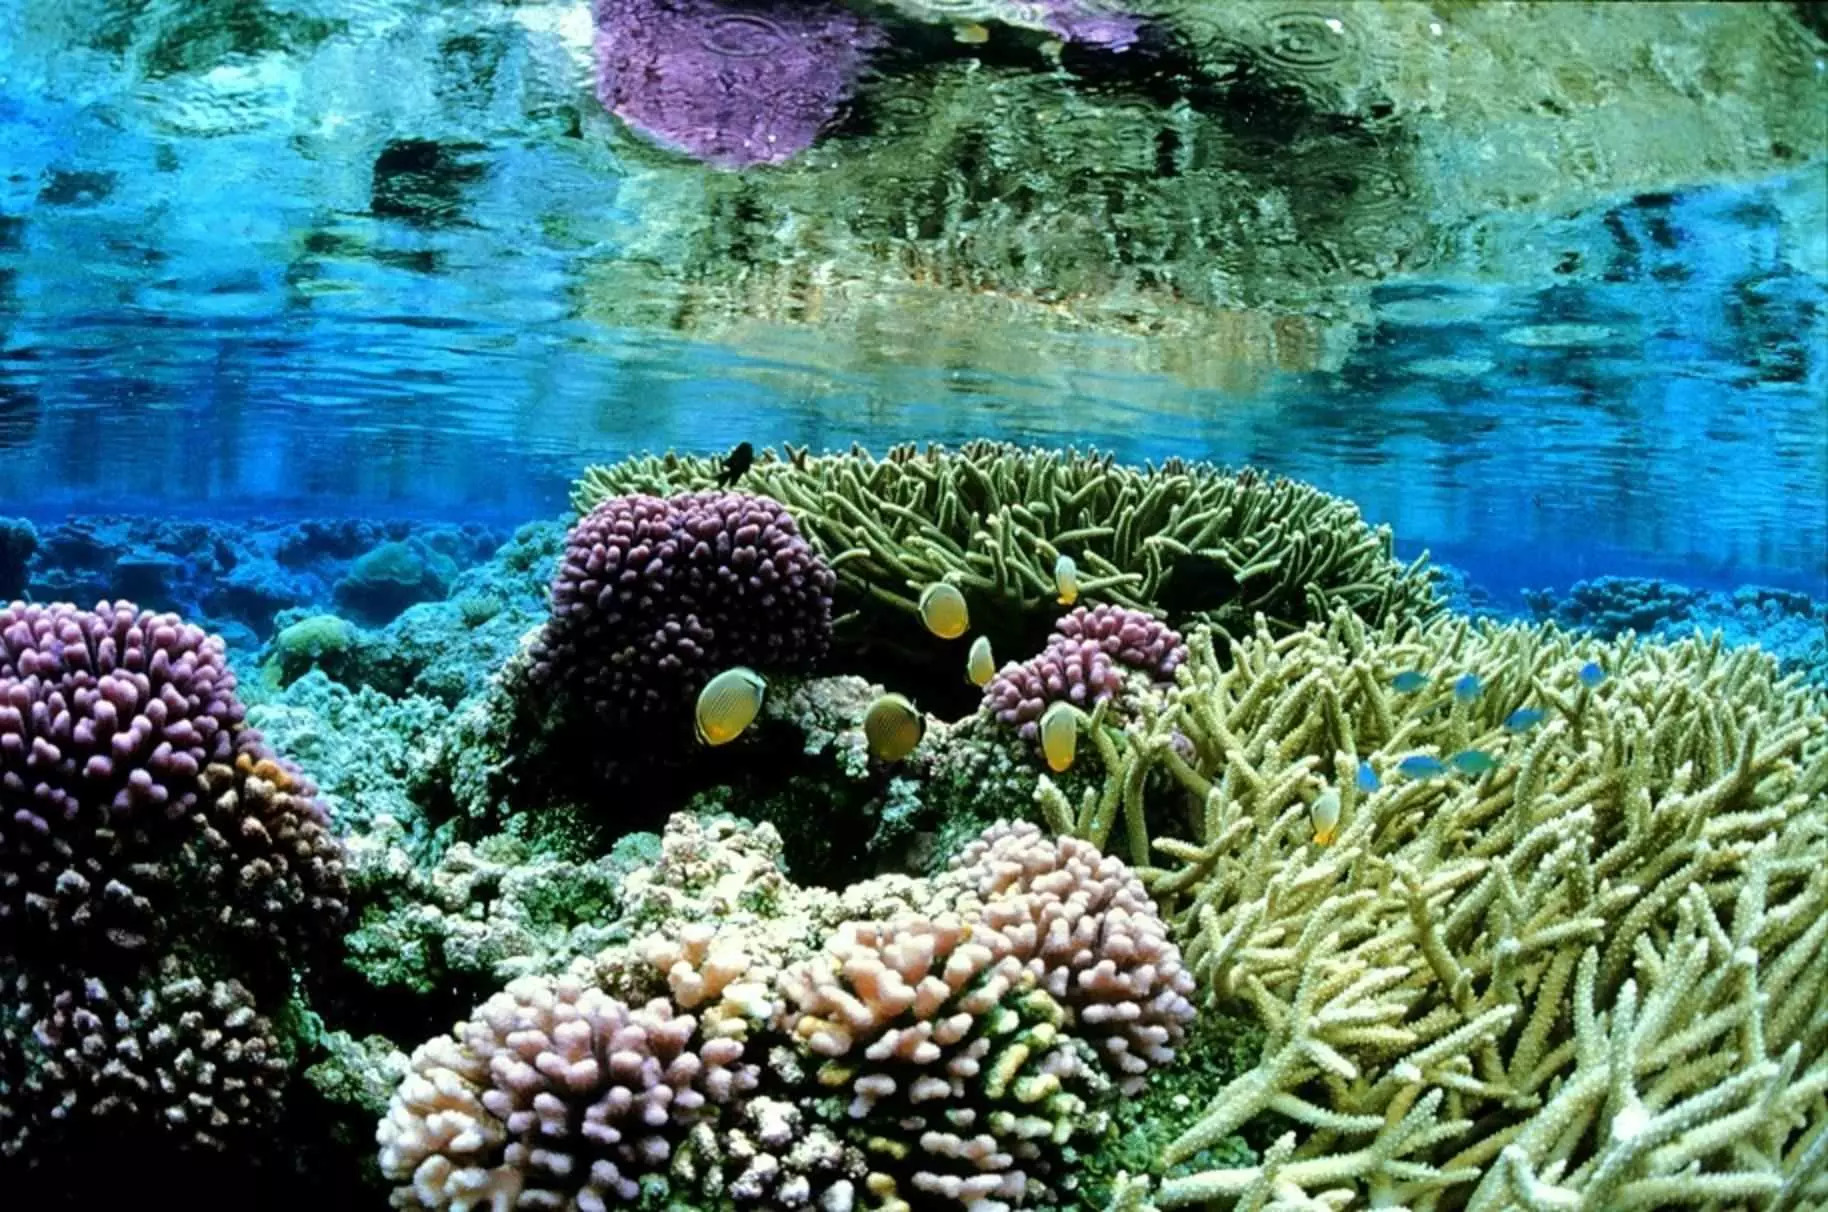 Douglas McCauley-Picture 8-Coral_gardens_underwater_landcape_scenic